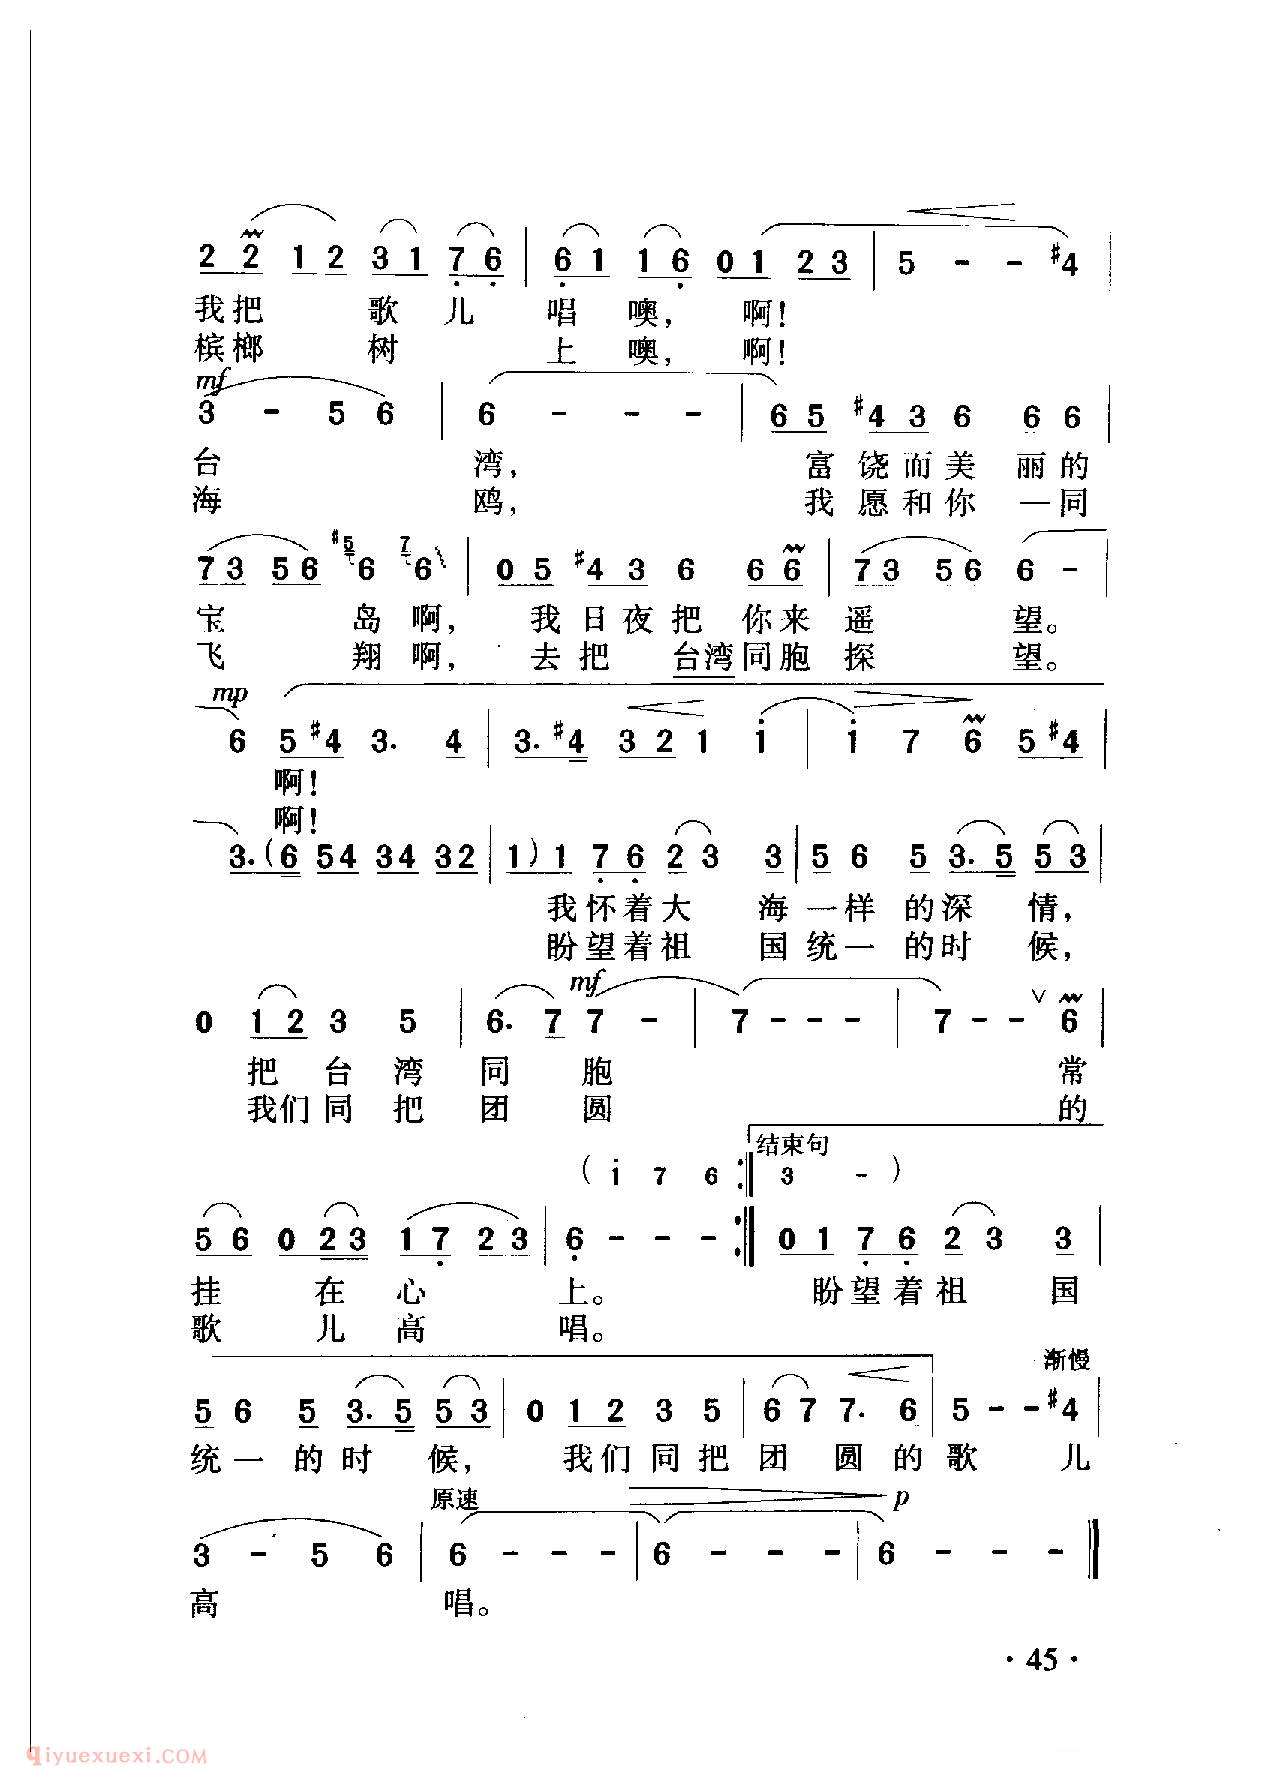 中国名歌[大海一样的深情]乐谱